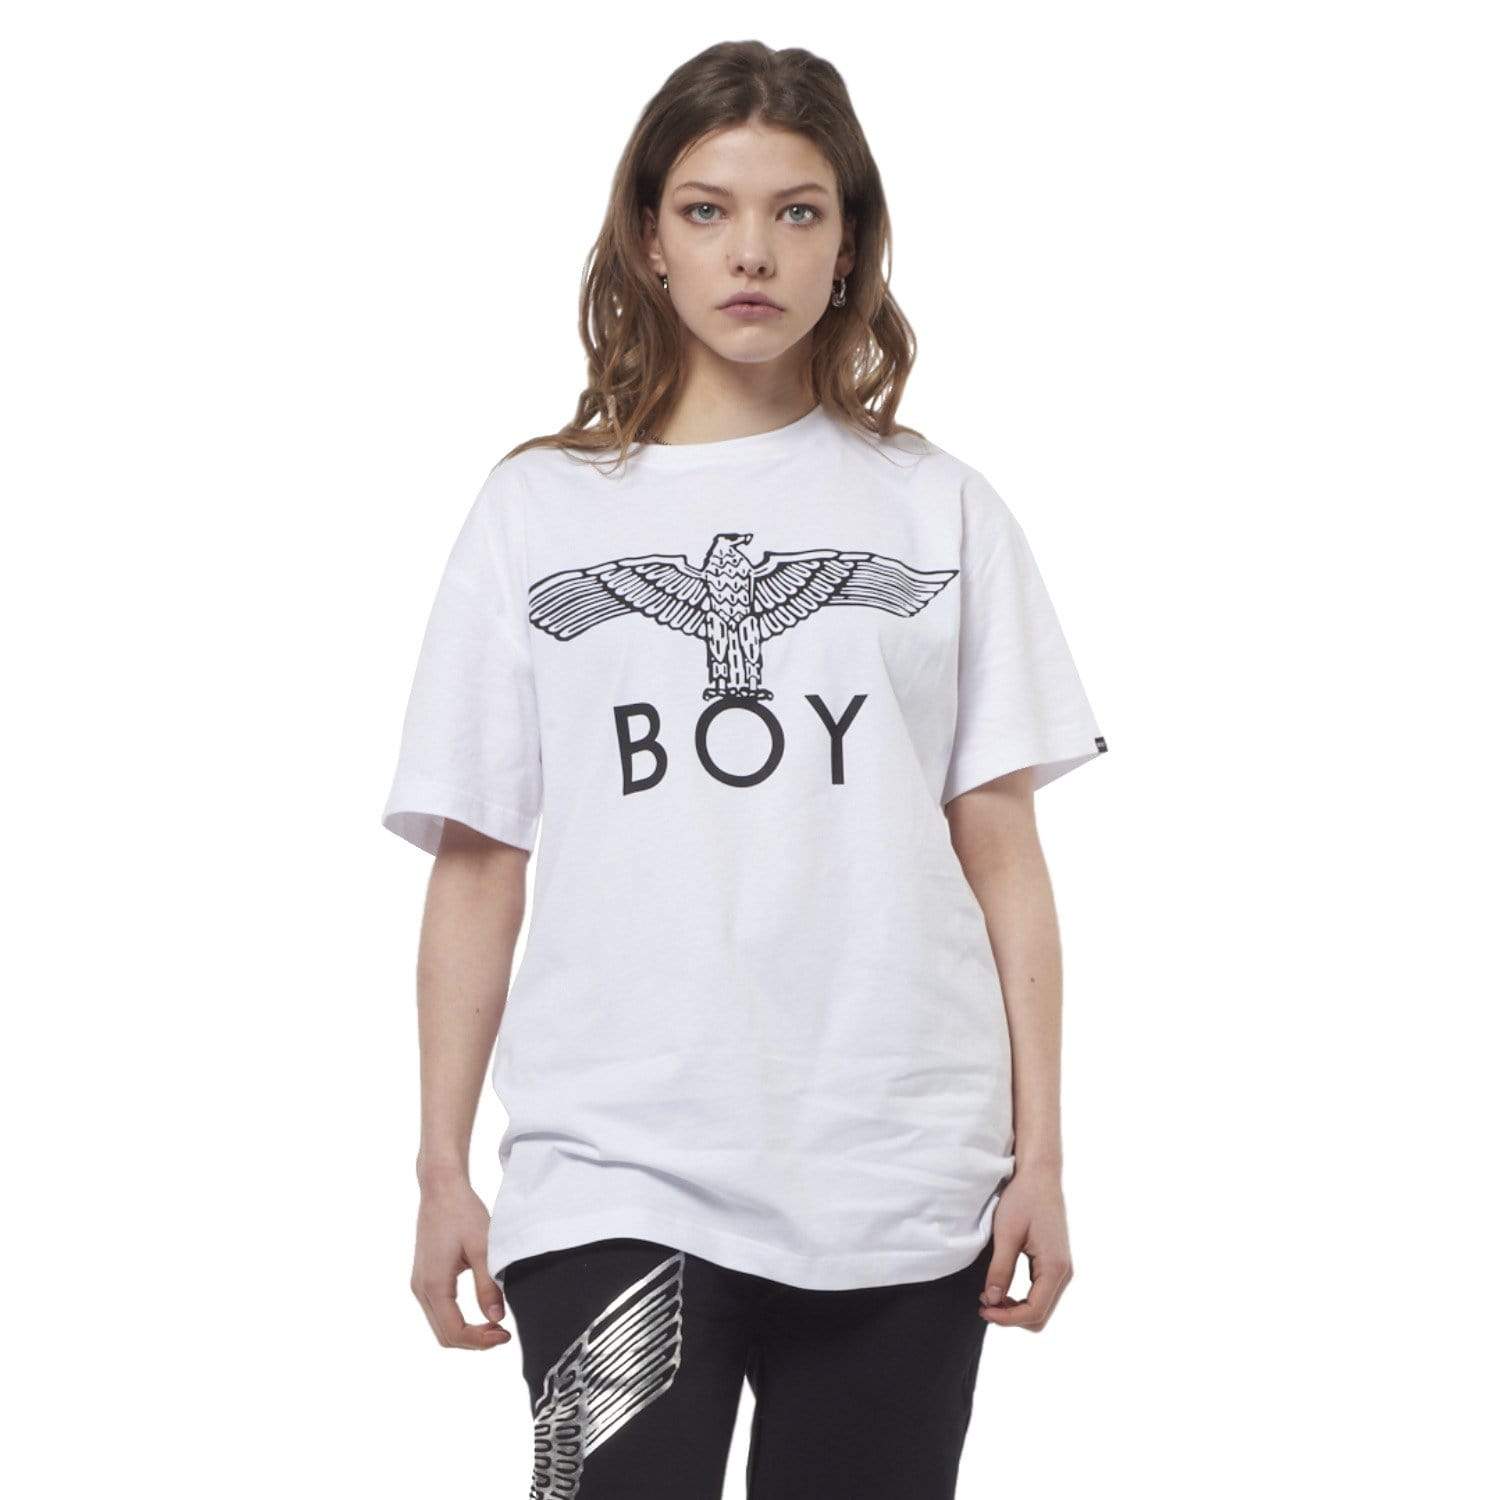 BOY EAGLE T-SHIRT WHITE /BLACK | BOY-London.com – BOY London